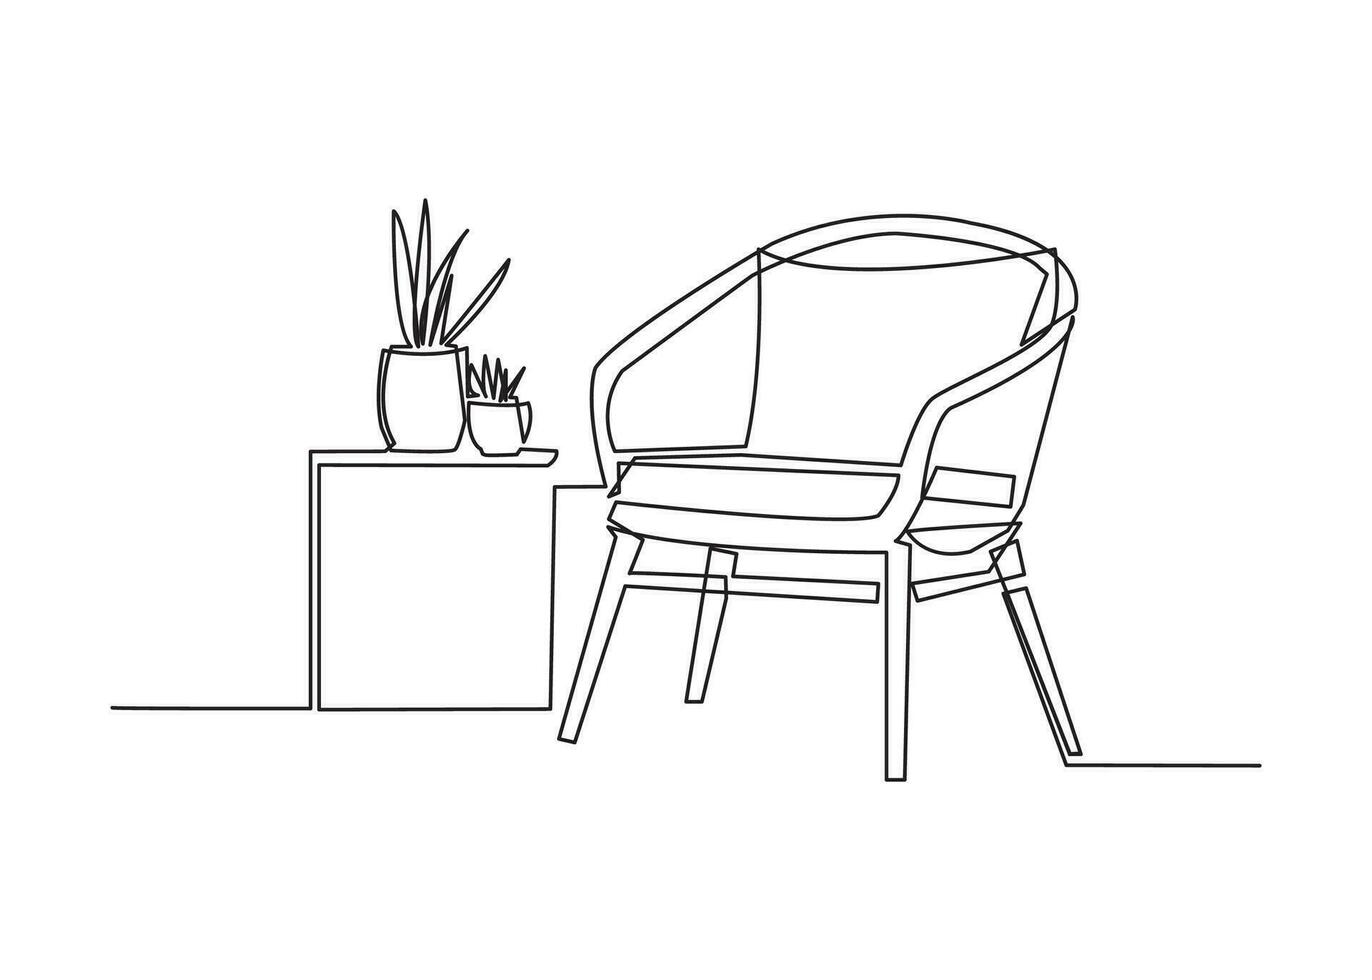 doorlopend een lijn tekening van fauteuil en met ingemaakt planten. Scandinavisch elegant meubilair in gemakkelijk lineair stijl. vector illustratie